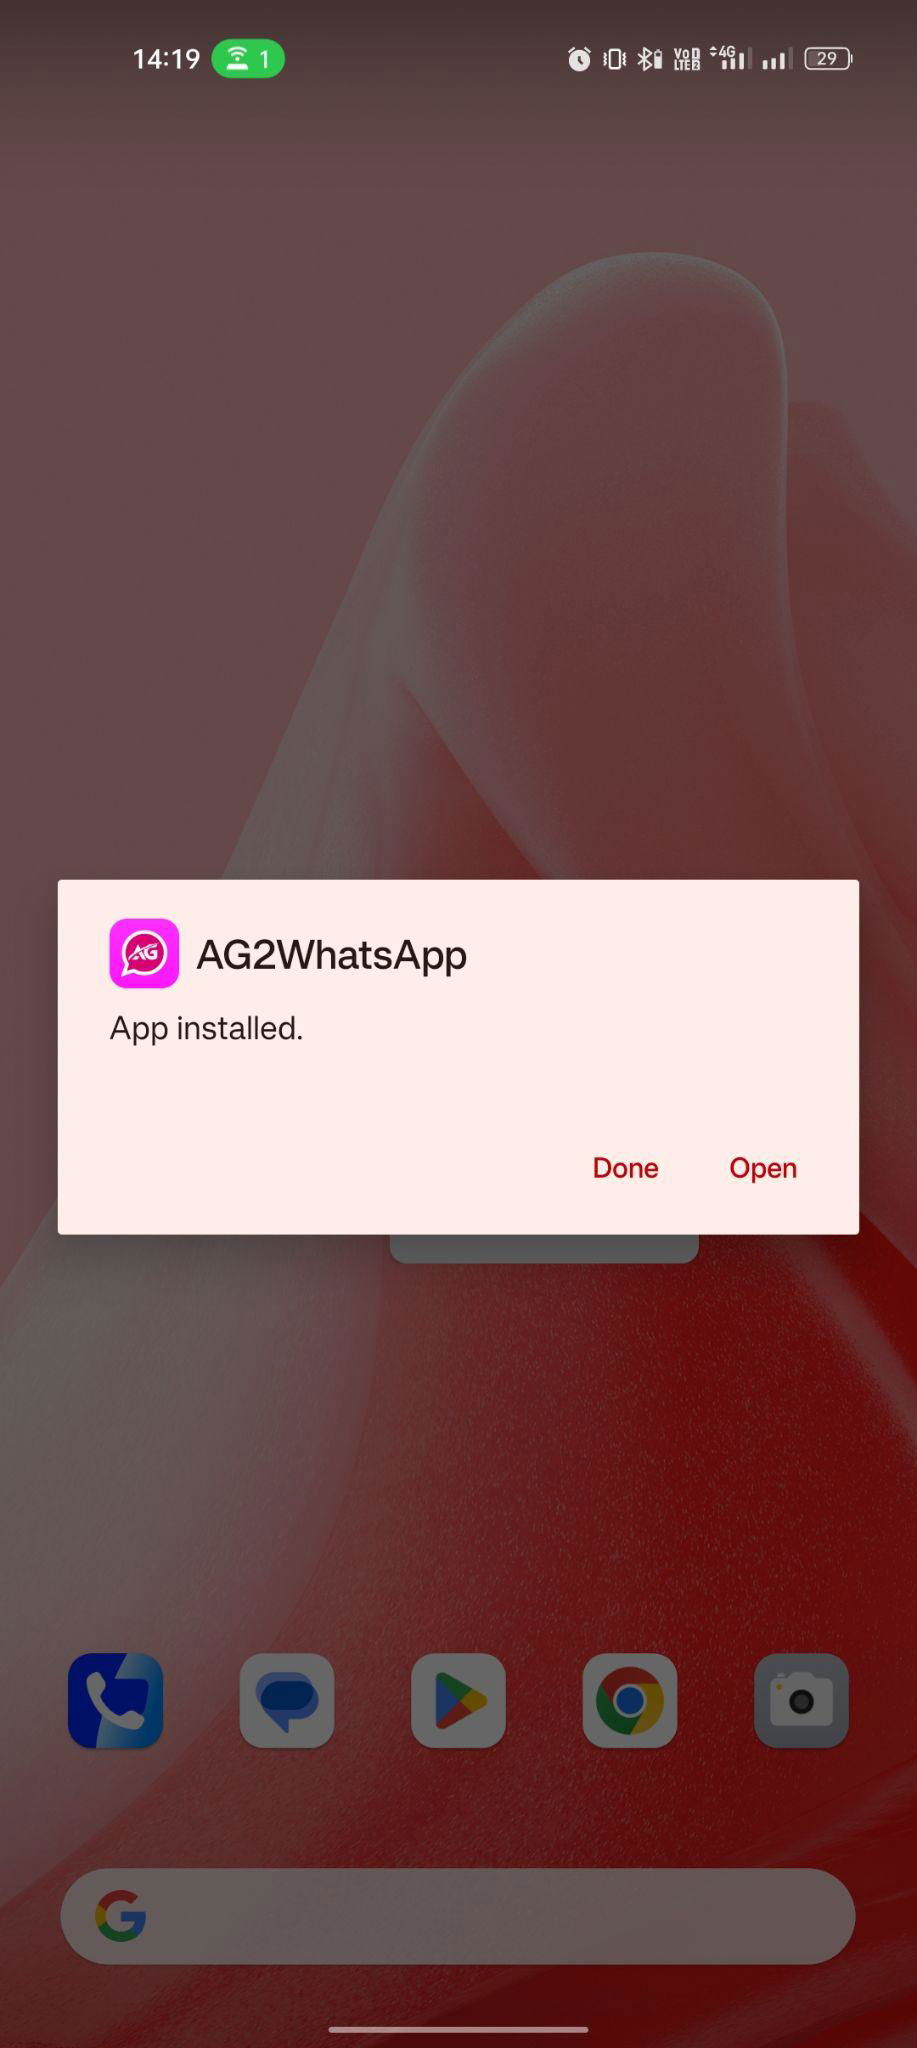 AG2 WhatsApp apk installed